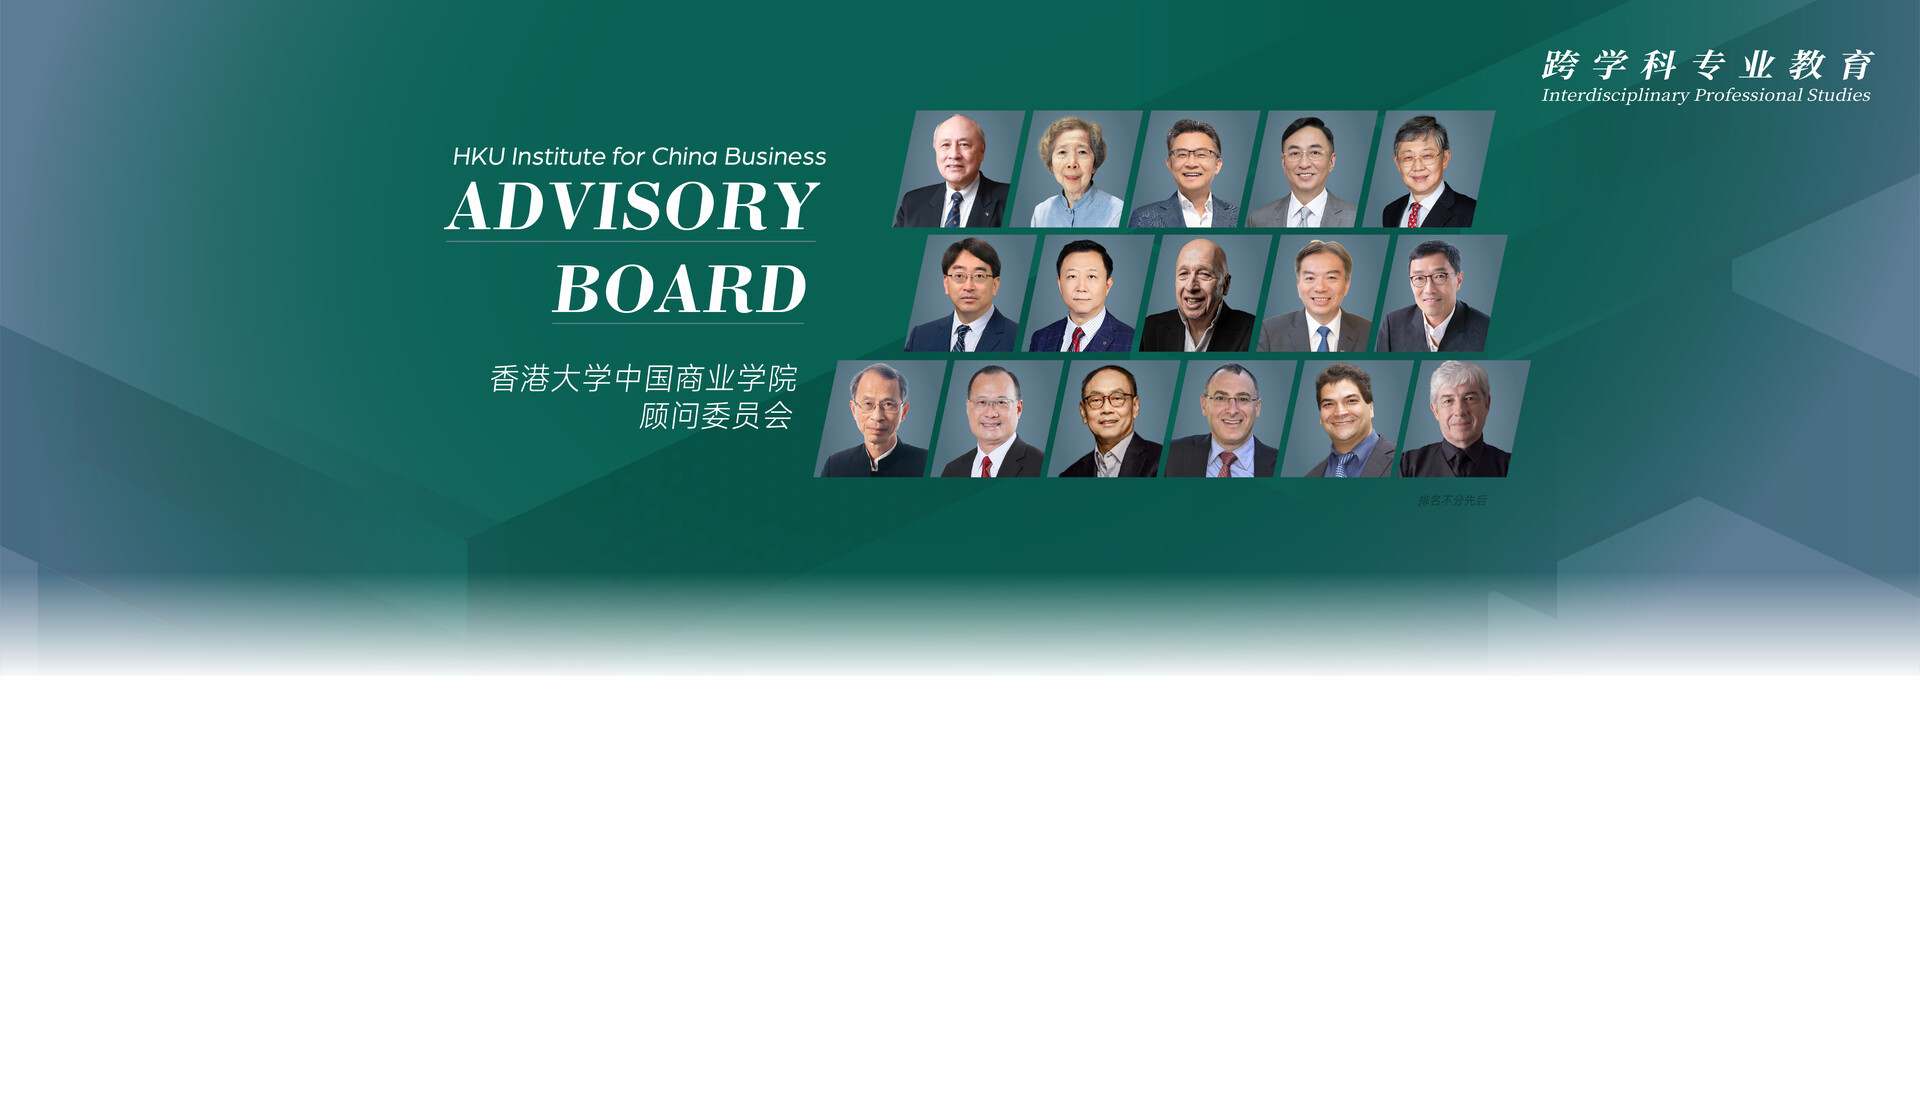 香港大学中国商业学院顾问委员会